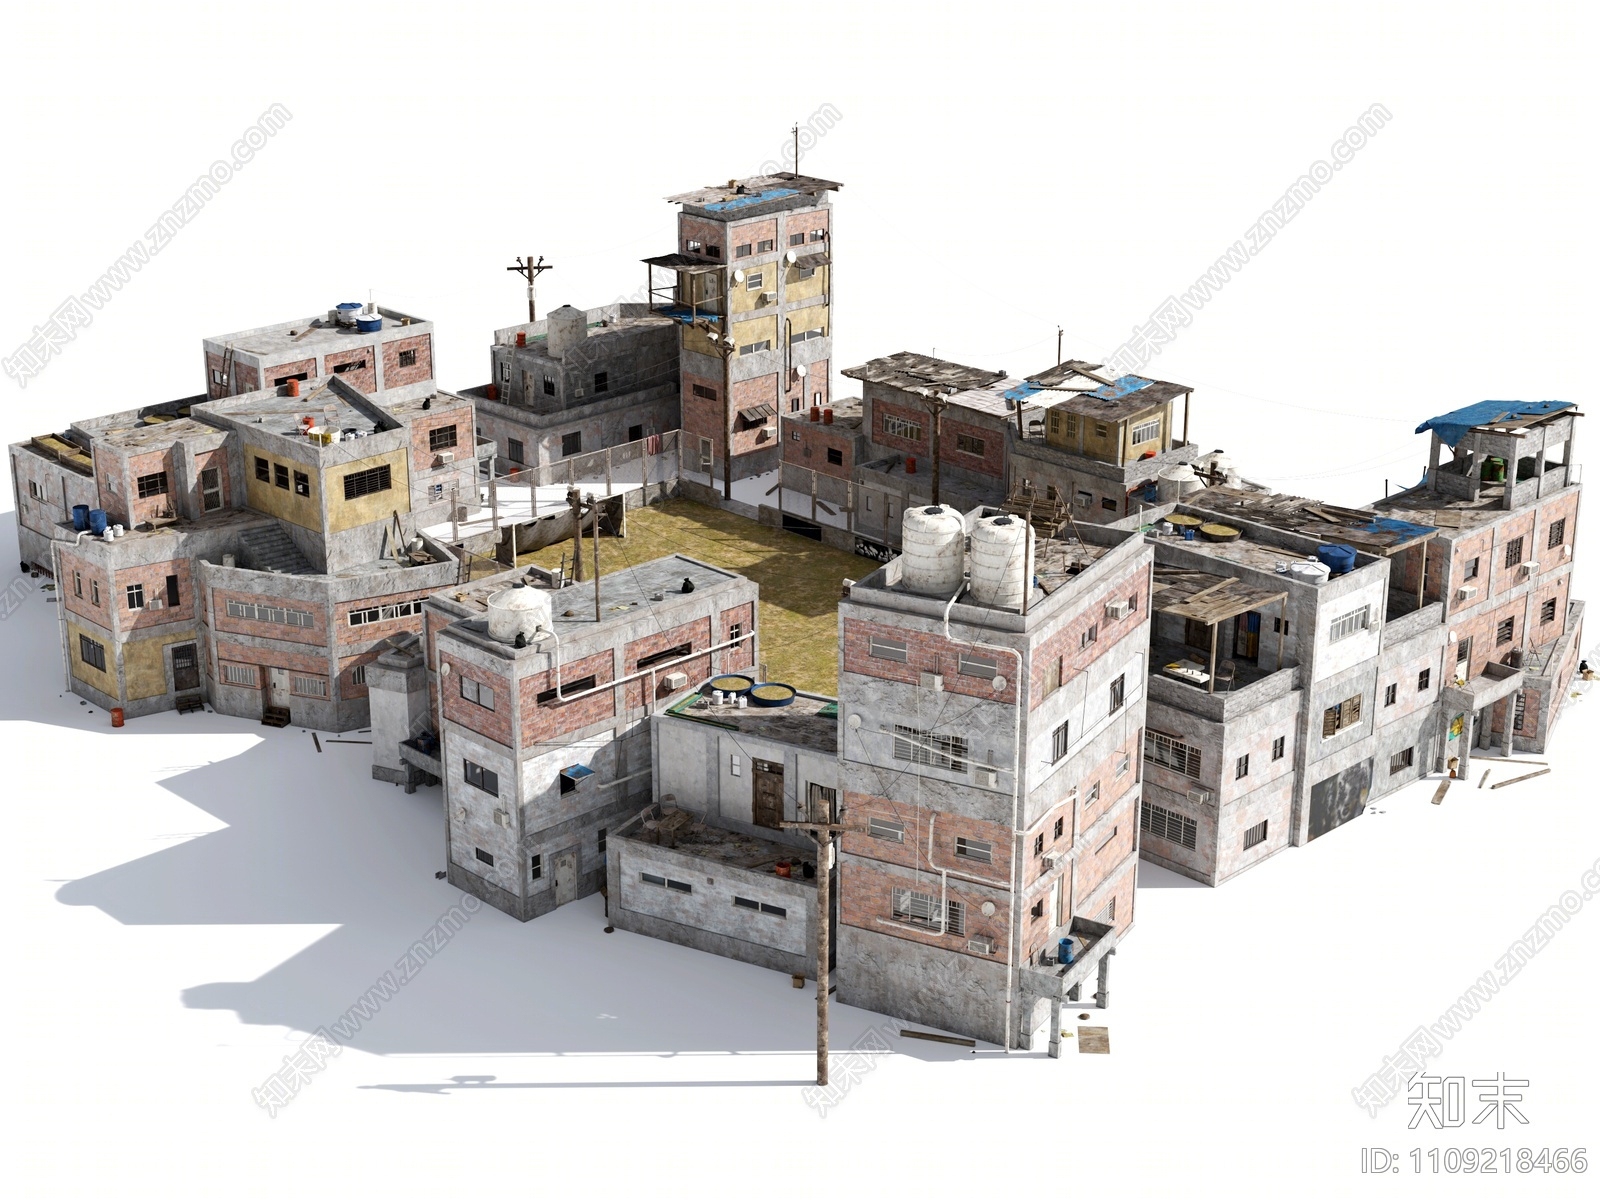 现代贫民窟住宅3D模型下载【ID:1109218466】